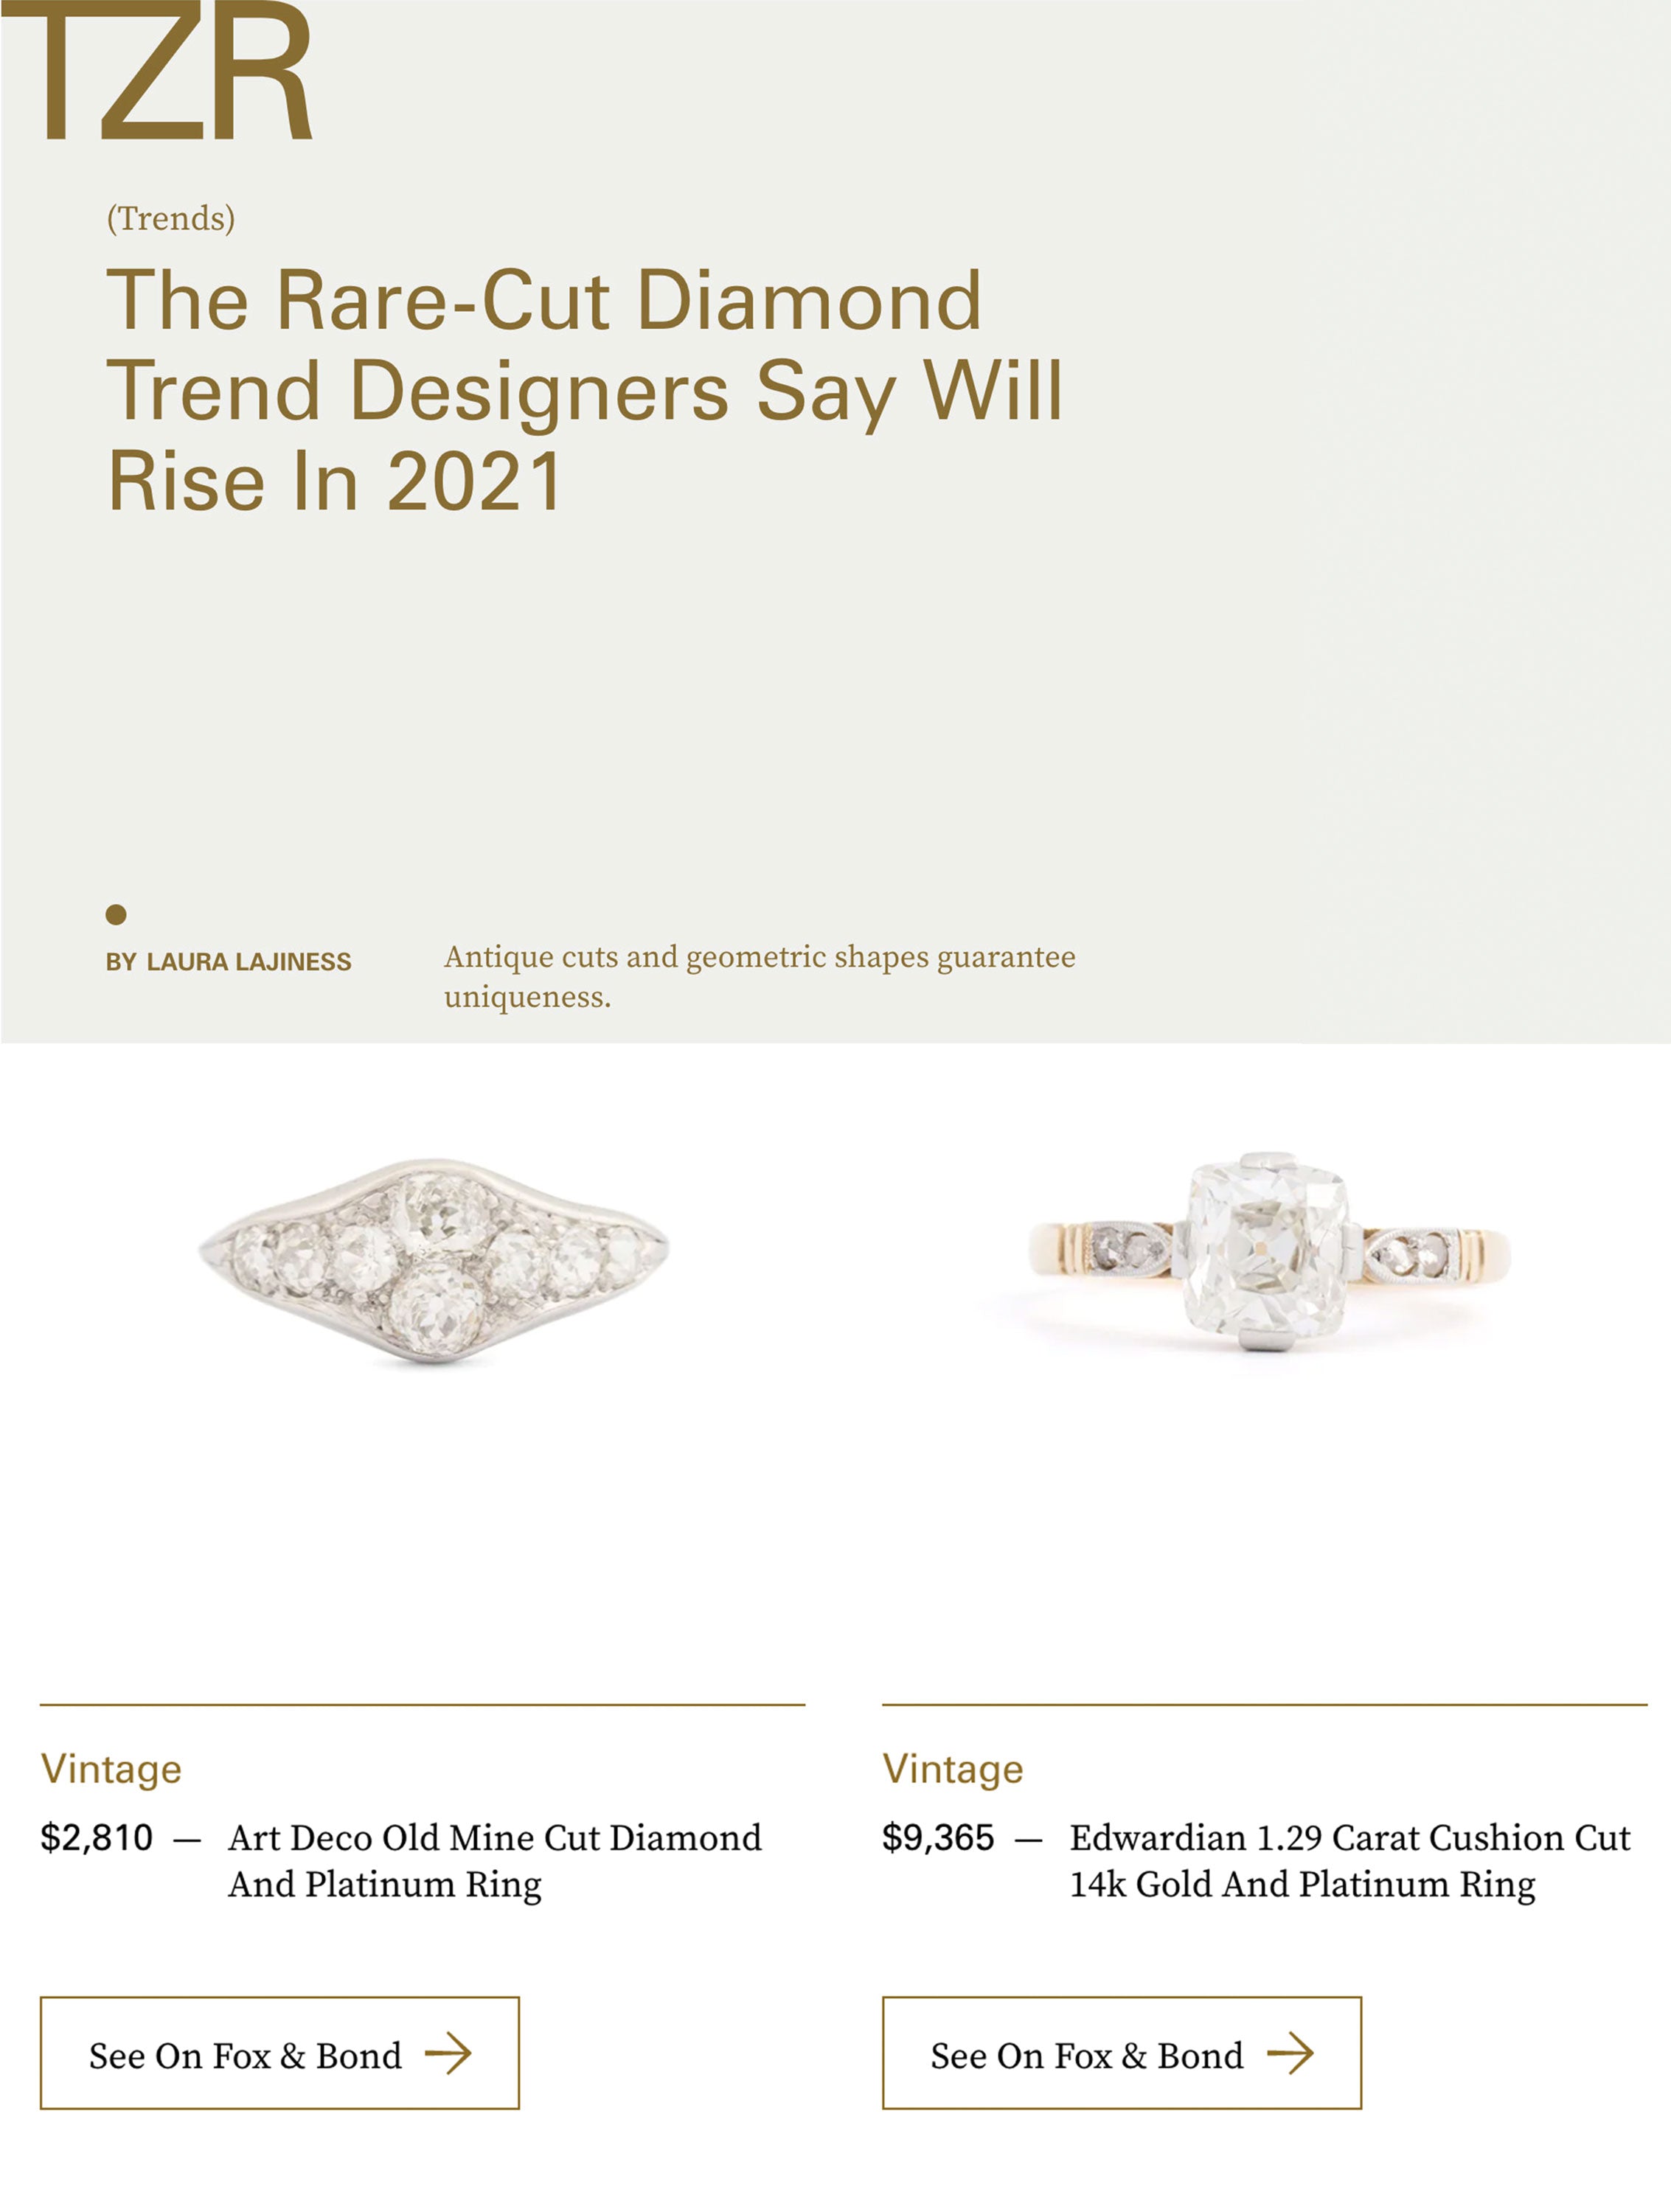 The Zoe Report: The Rare-Cut Diamond Trend Designers Say Will Rise In 2021